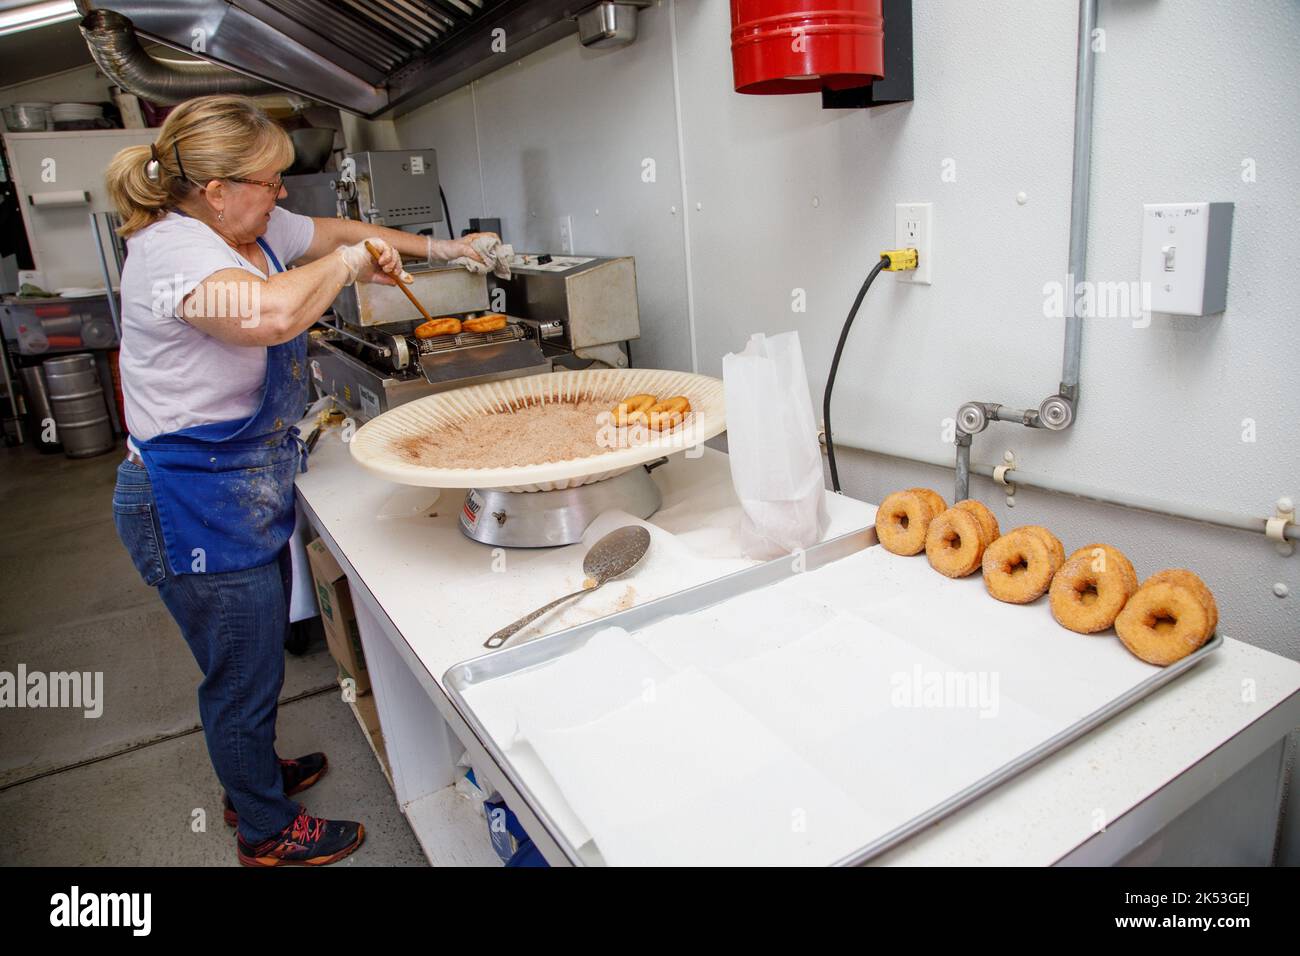 Rogers Family Orchard, Johnstown, Fulton County, Nueva York: Hacer donuts de sidra de manzana es una tradición otoñal en el norte del estado de Nueva York. Foto de stock